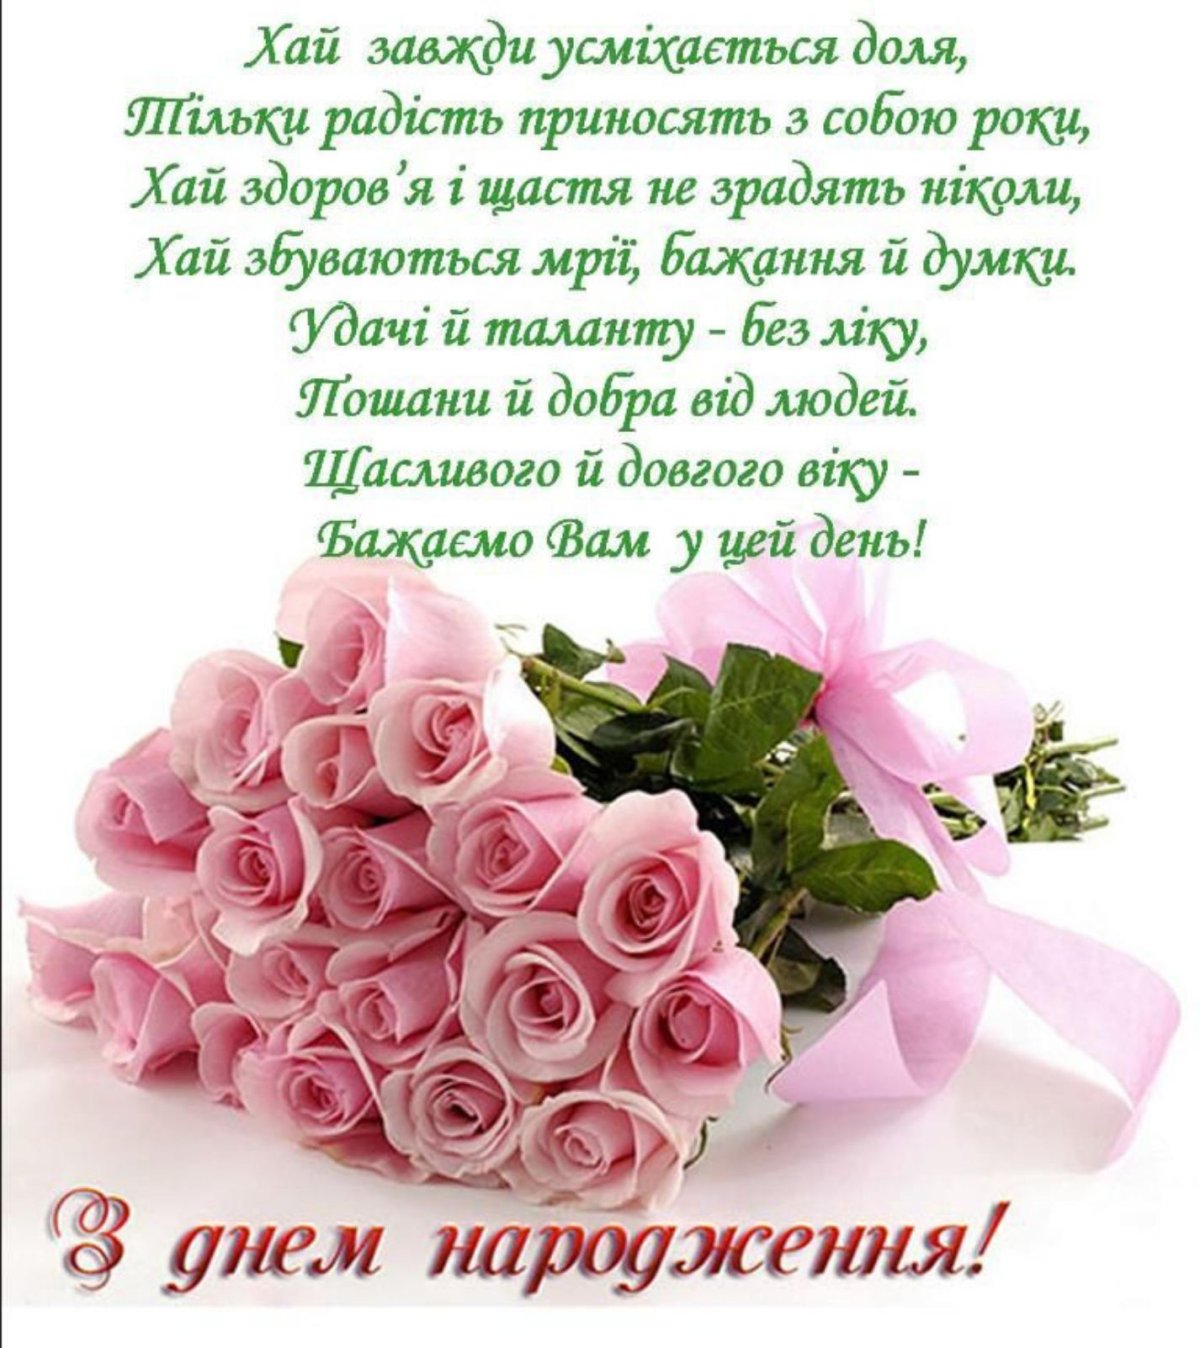 С Днем рождения! Красивые поздравления в открытках на украинском языке для мужчины